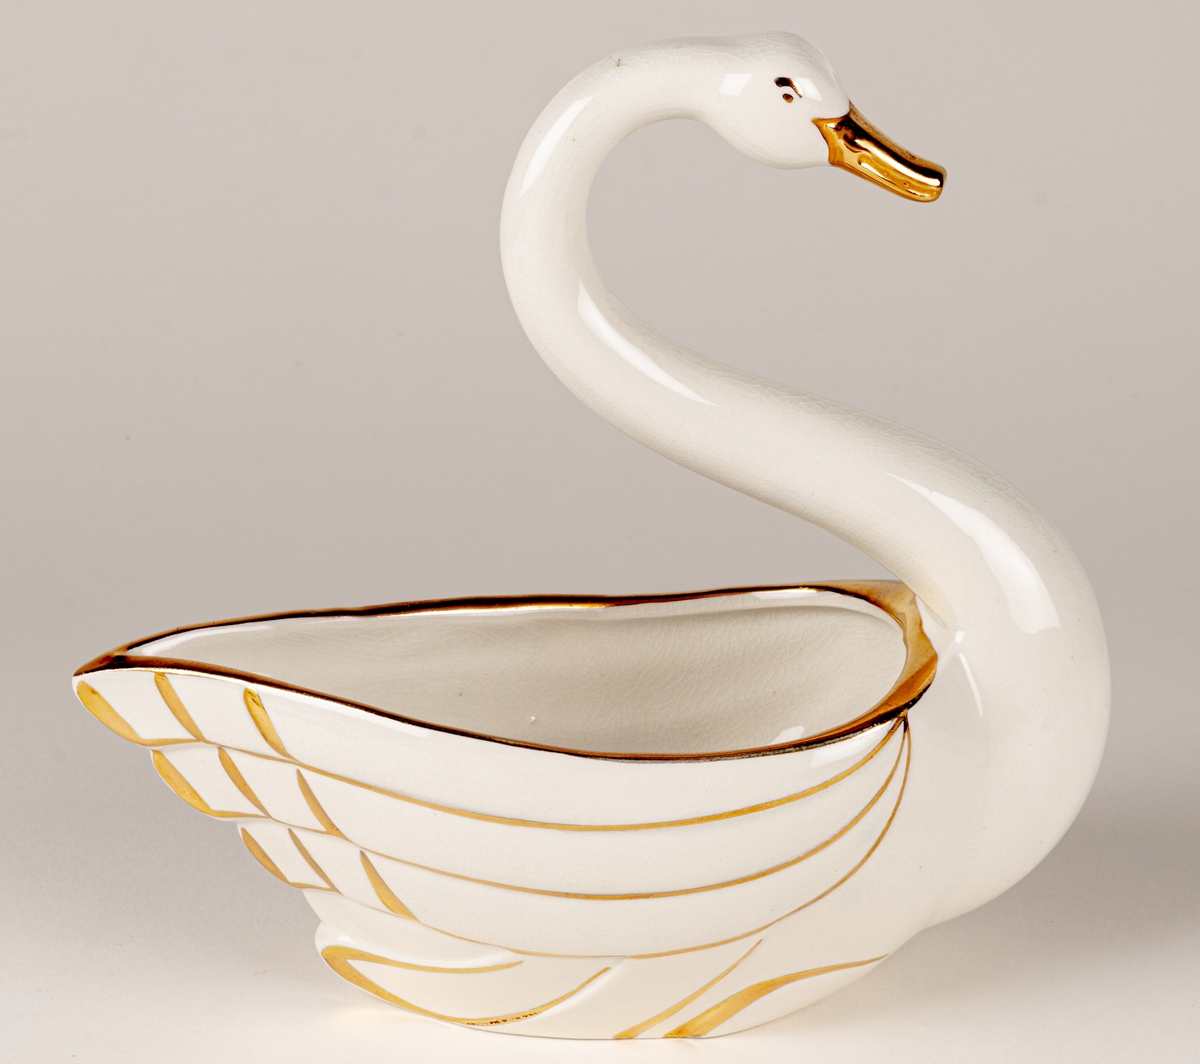 Prydnadsfigur eller skål i form av en svan, flintgods, modell A, dekorserie Aladdin; vit glasyr med handmålat guld. Aladdin producerades under åren 1941-1943. Oklart vem formgivaren är.